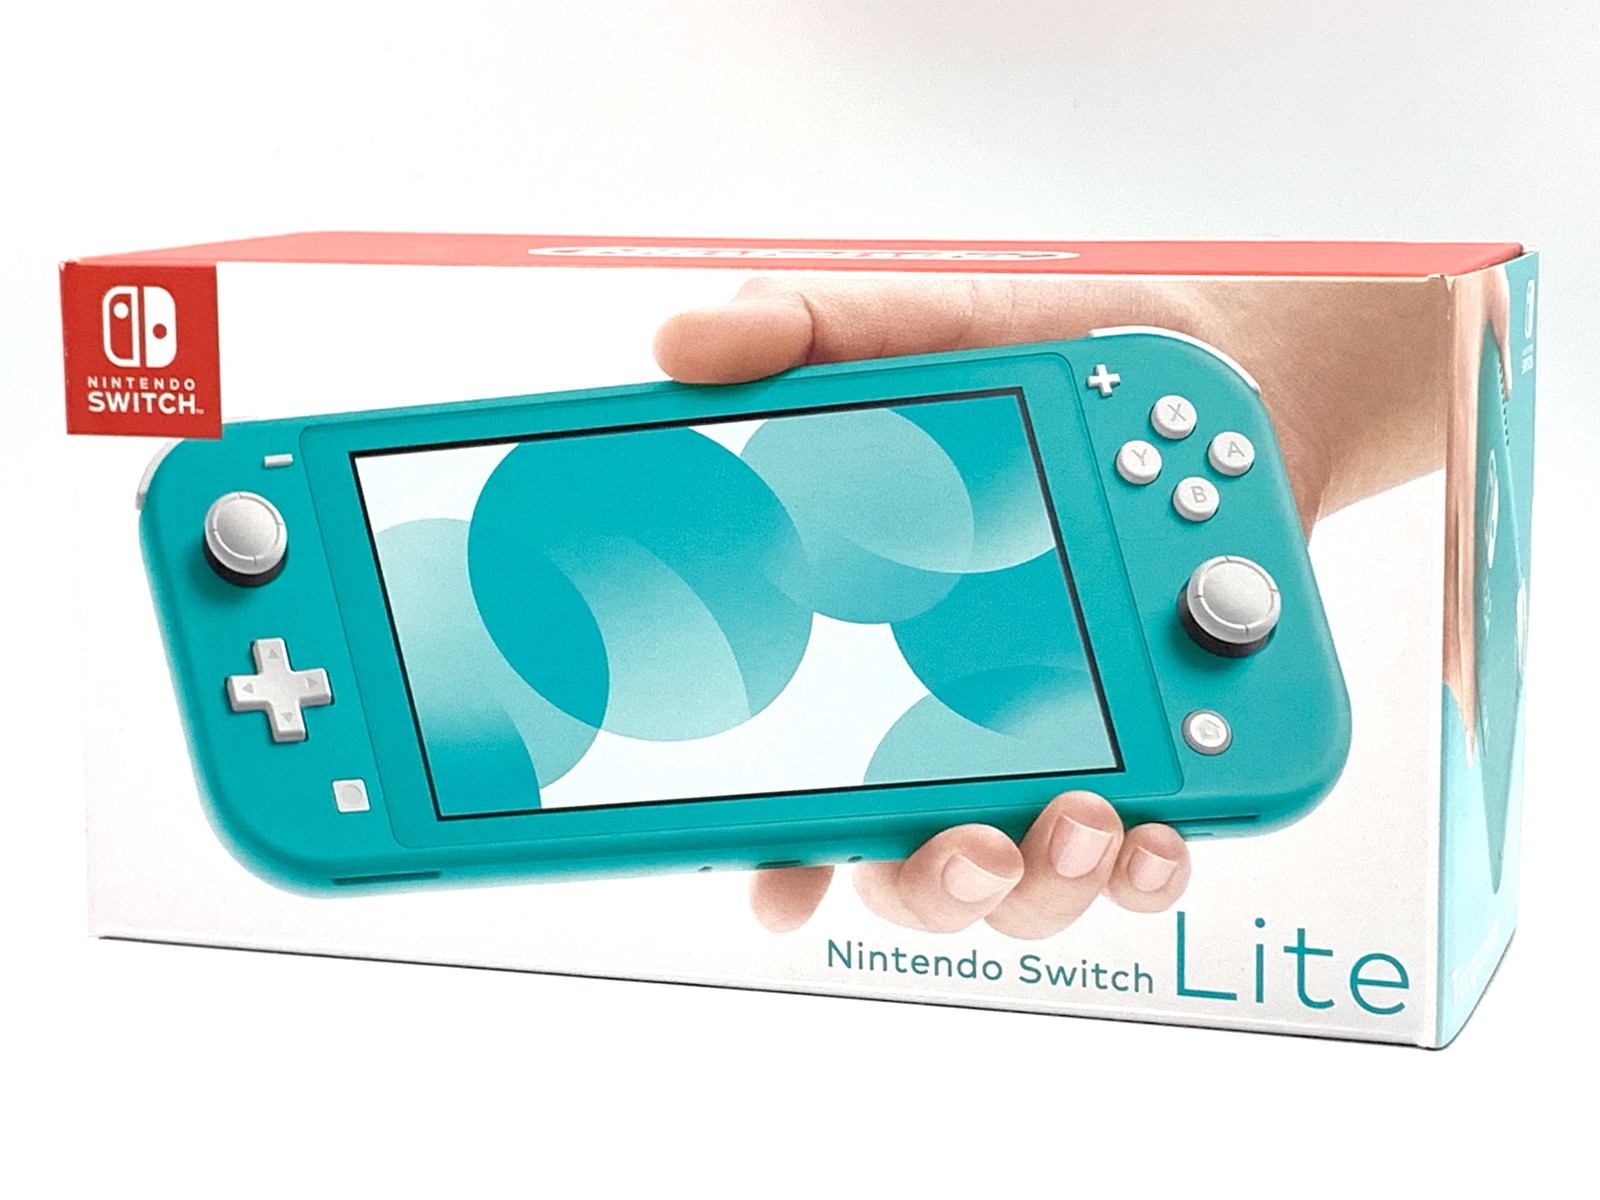 【ゲームソフ】 Nintendo Switch - NintendoSwitchLite ターコイズ 新品未使用の通販 by 新品未使用品販売